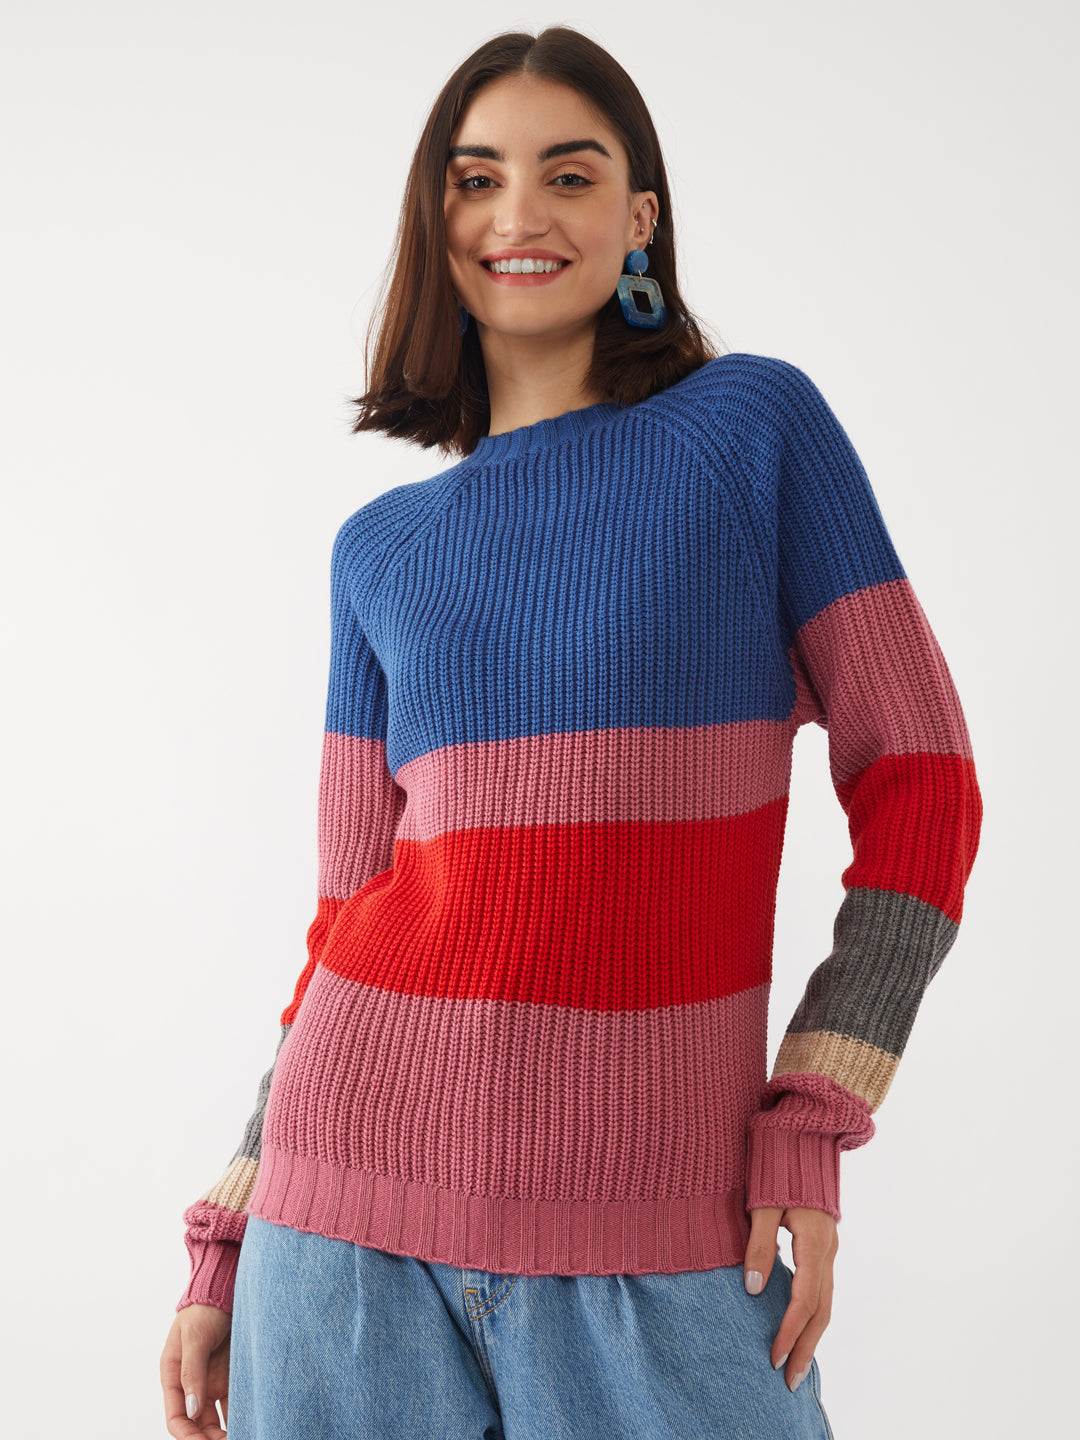 Multicolored Colourblocked Sweater For Women